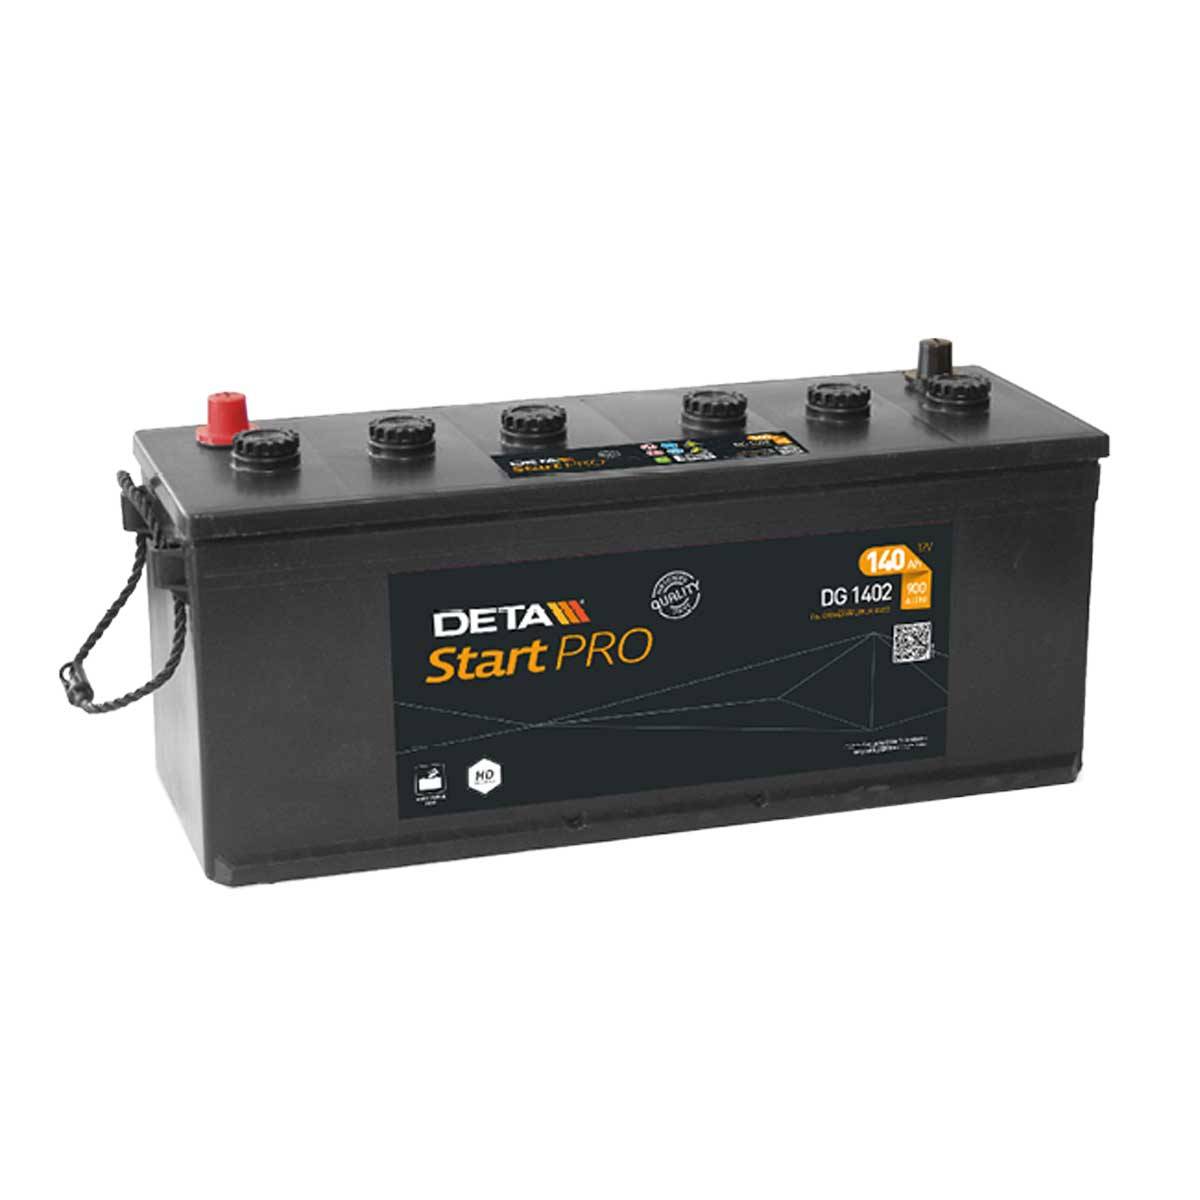 DETA DG1402 Start Pro 12V 140Ah 900A Truck Battery